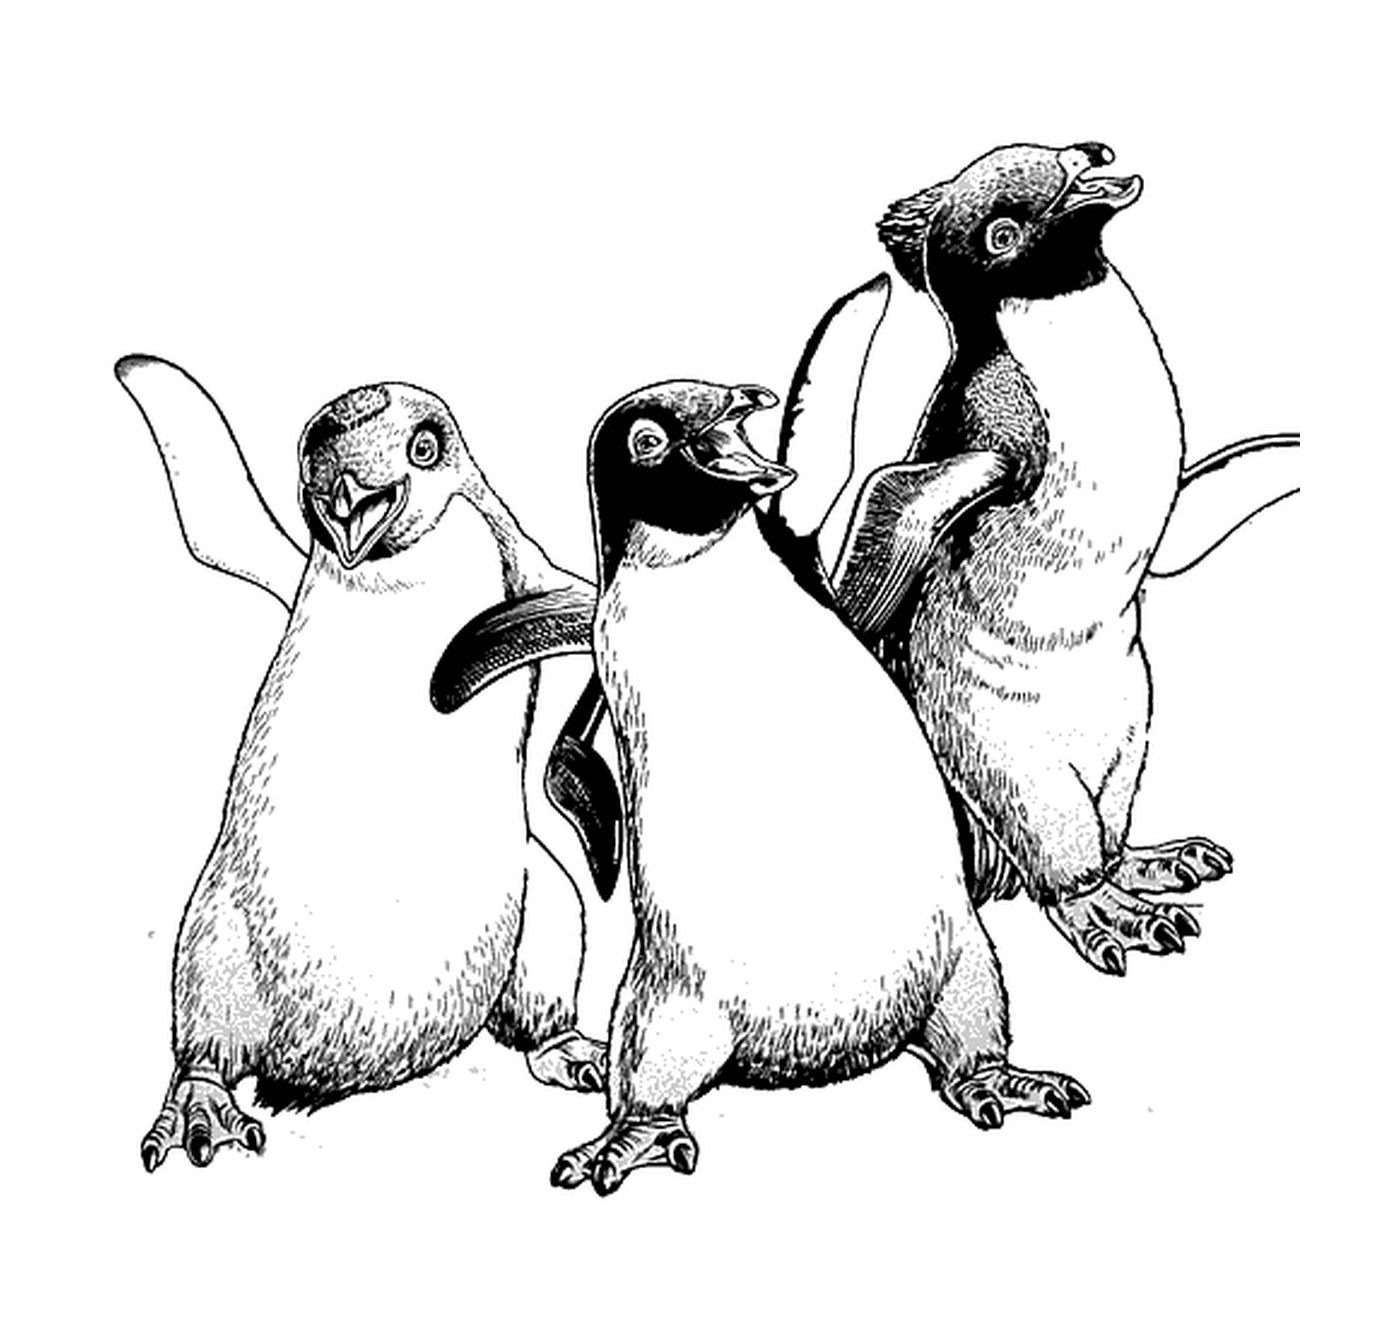  Gruppe von drei Pinguinen nebeneinander 